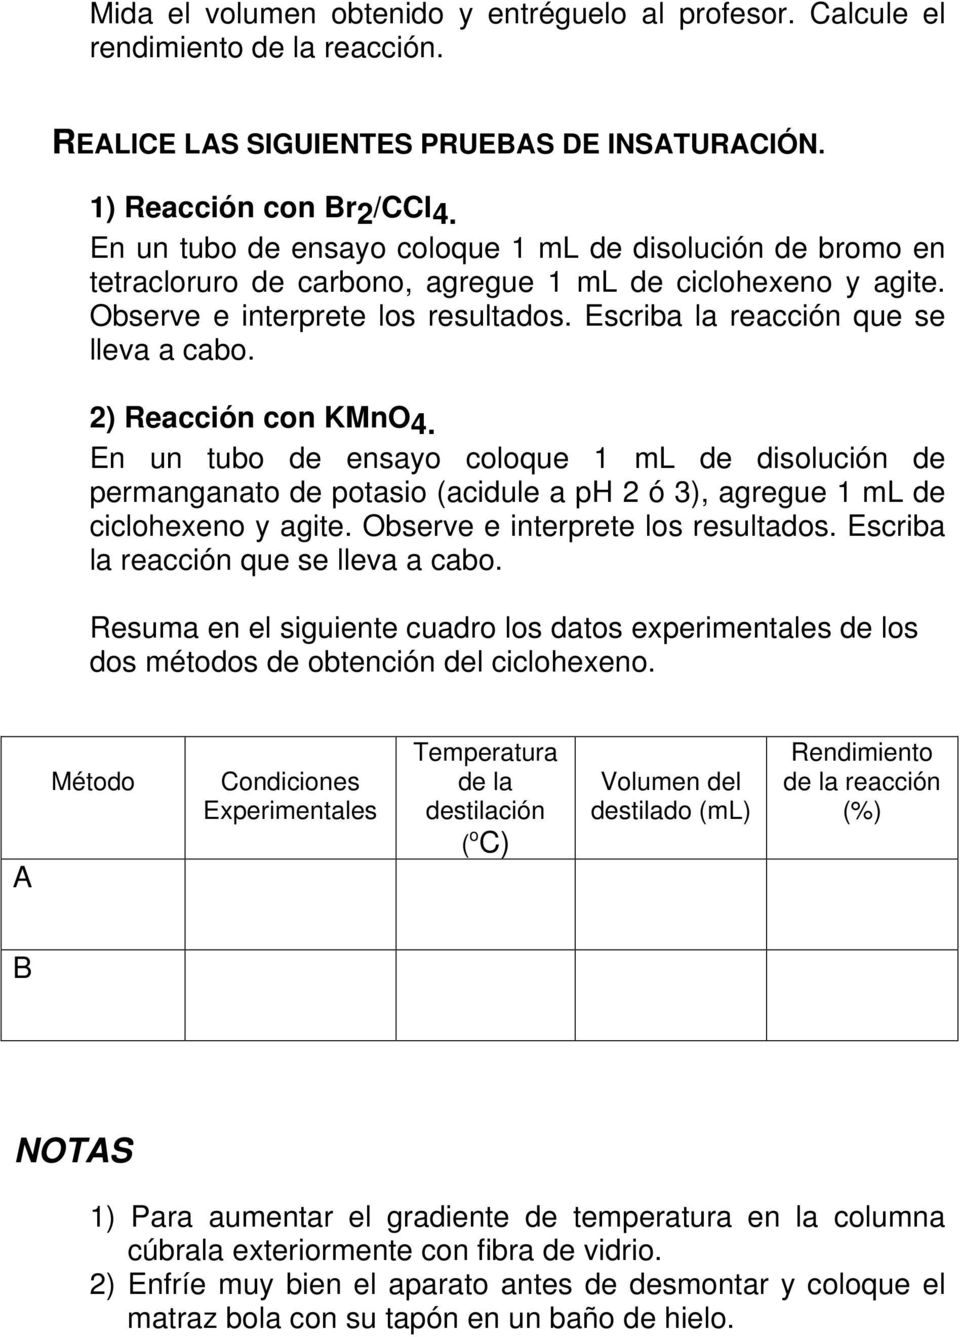 2) Reacción con KMnO4. En un tubo de ensayo coloque 1 ml de disolución de permanganato de potasio (acidule a ph 2 ó 3), agregue 1 ml de ciclohexeno y agite. Observe e interprete los resultados.